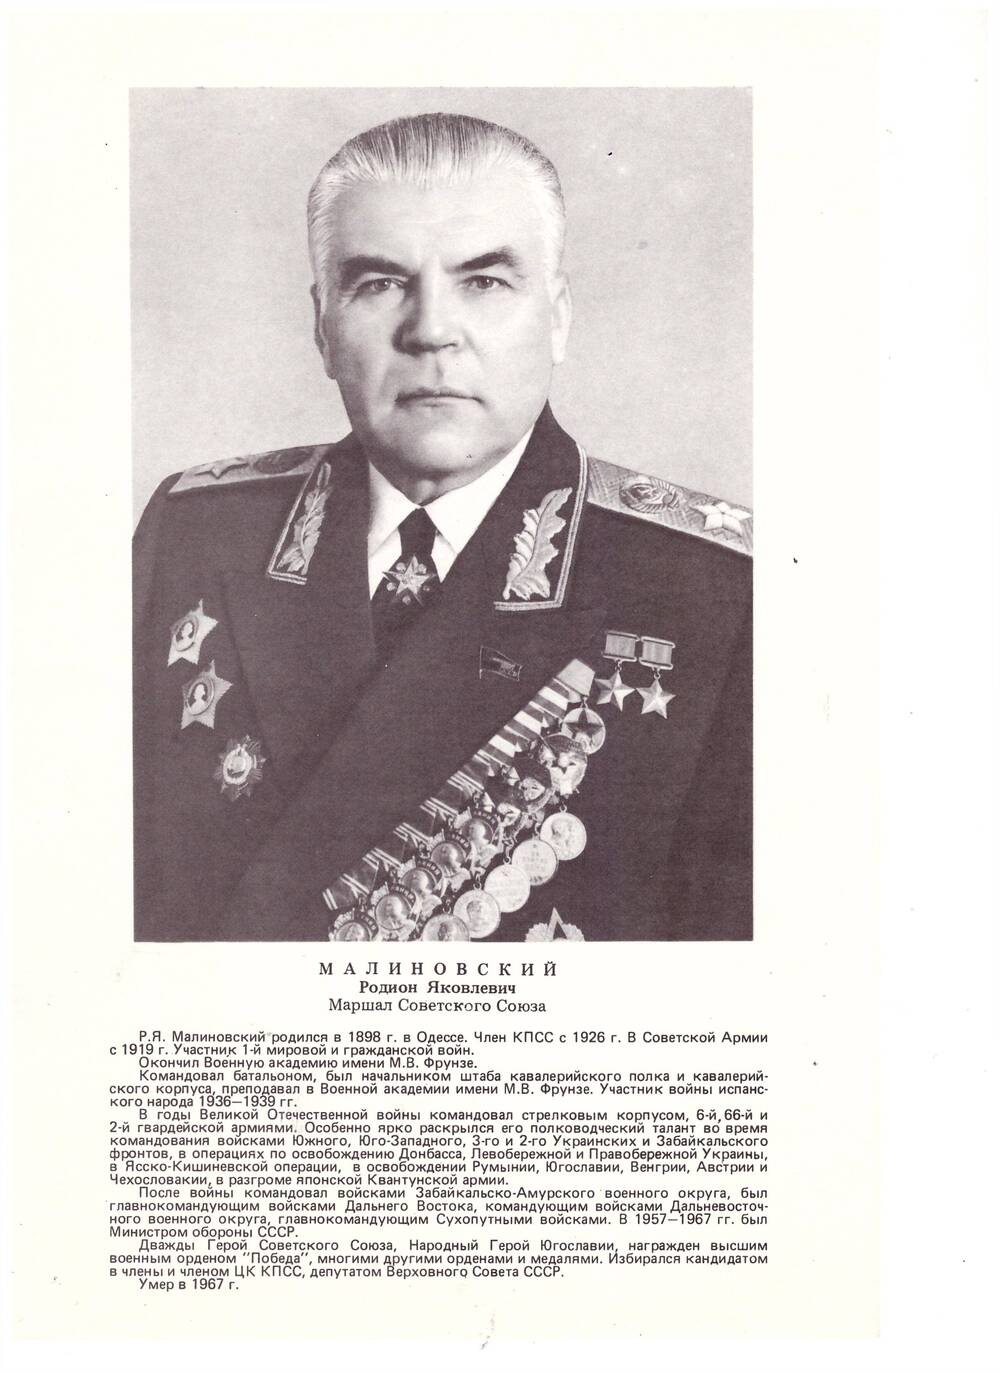 Комплект фотопортретов «Полководцы и военачальники Великой Отечественной войны».